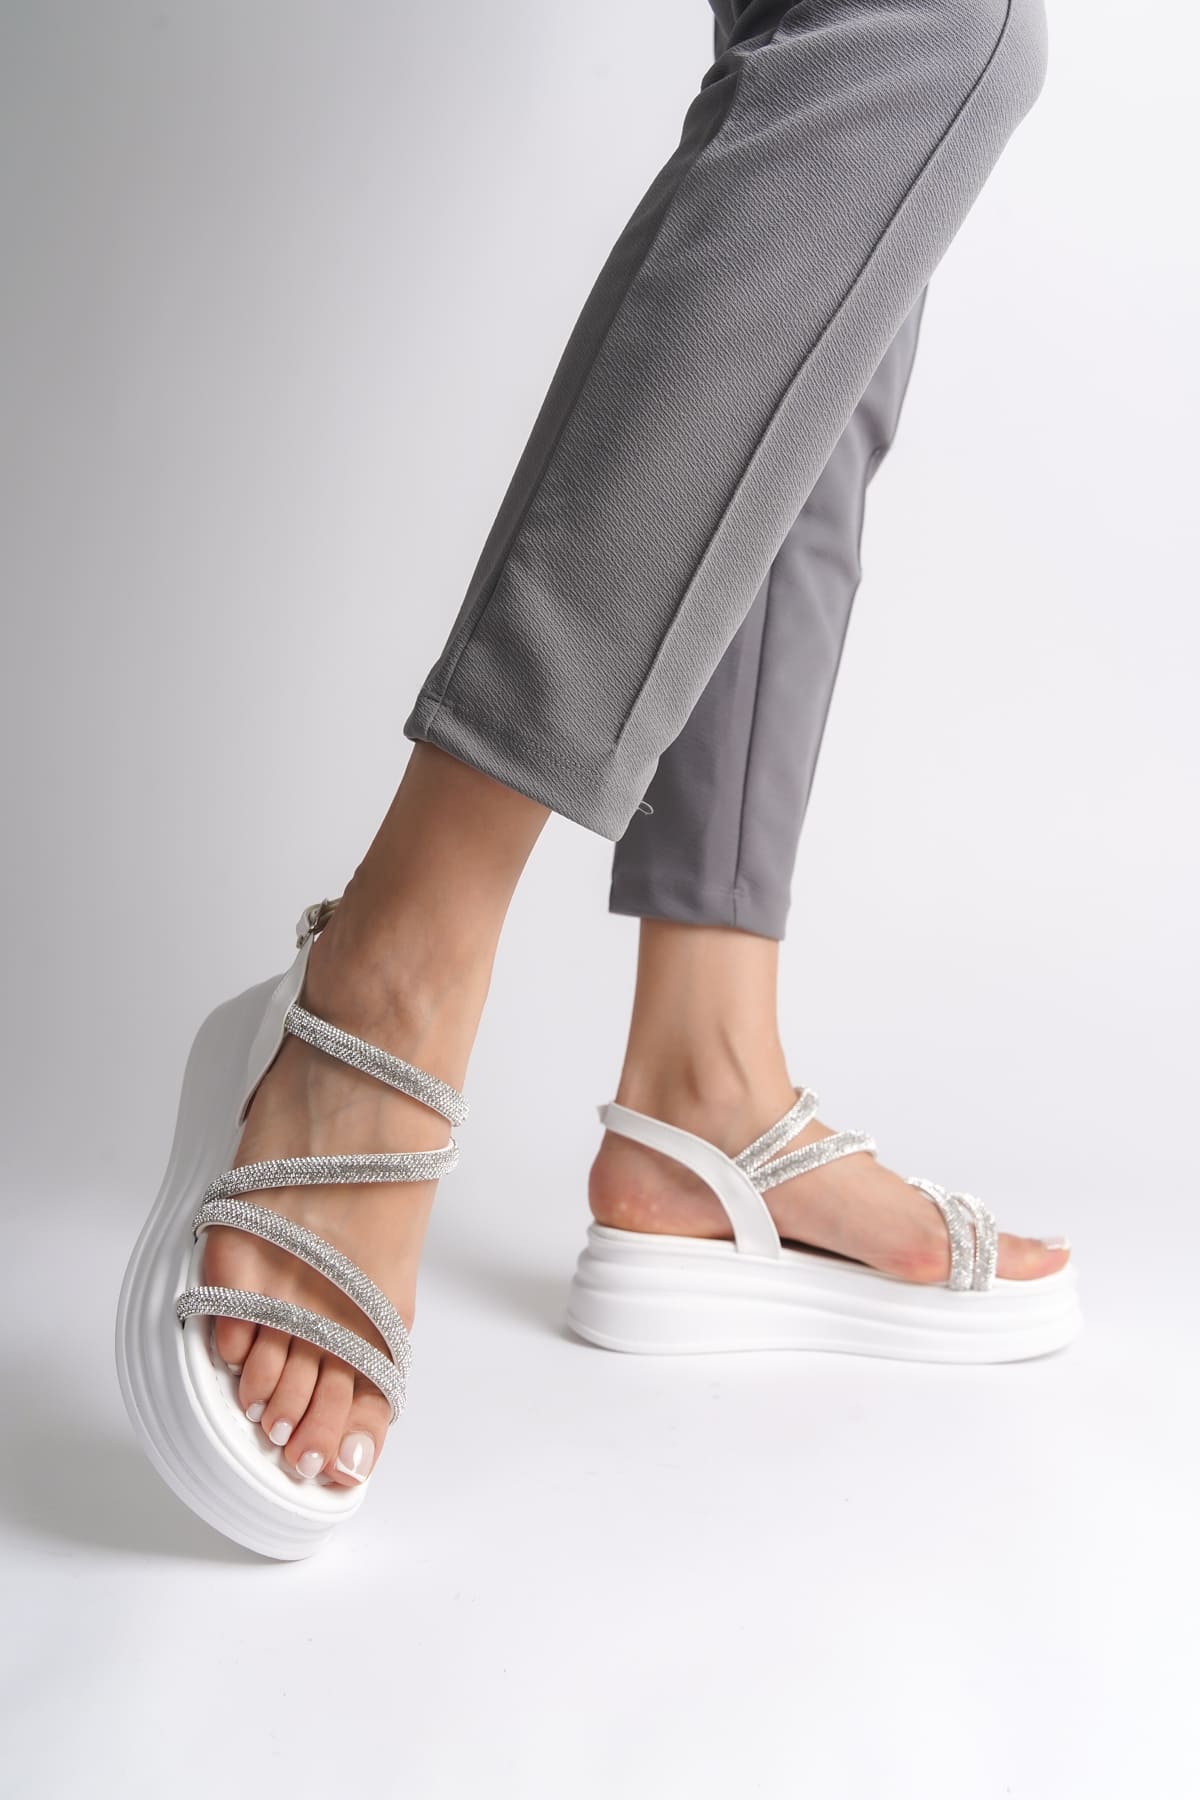 CLZ948  İnce Tokalı Taşlı Şeritli Ortopedik Taban Kadın Sandalet BT Beyaz